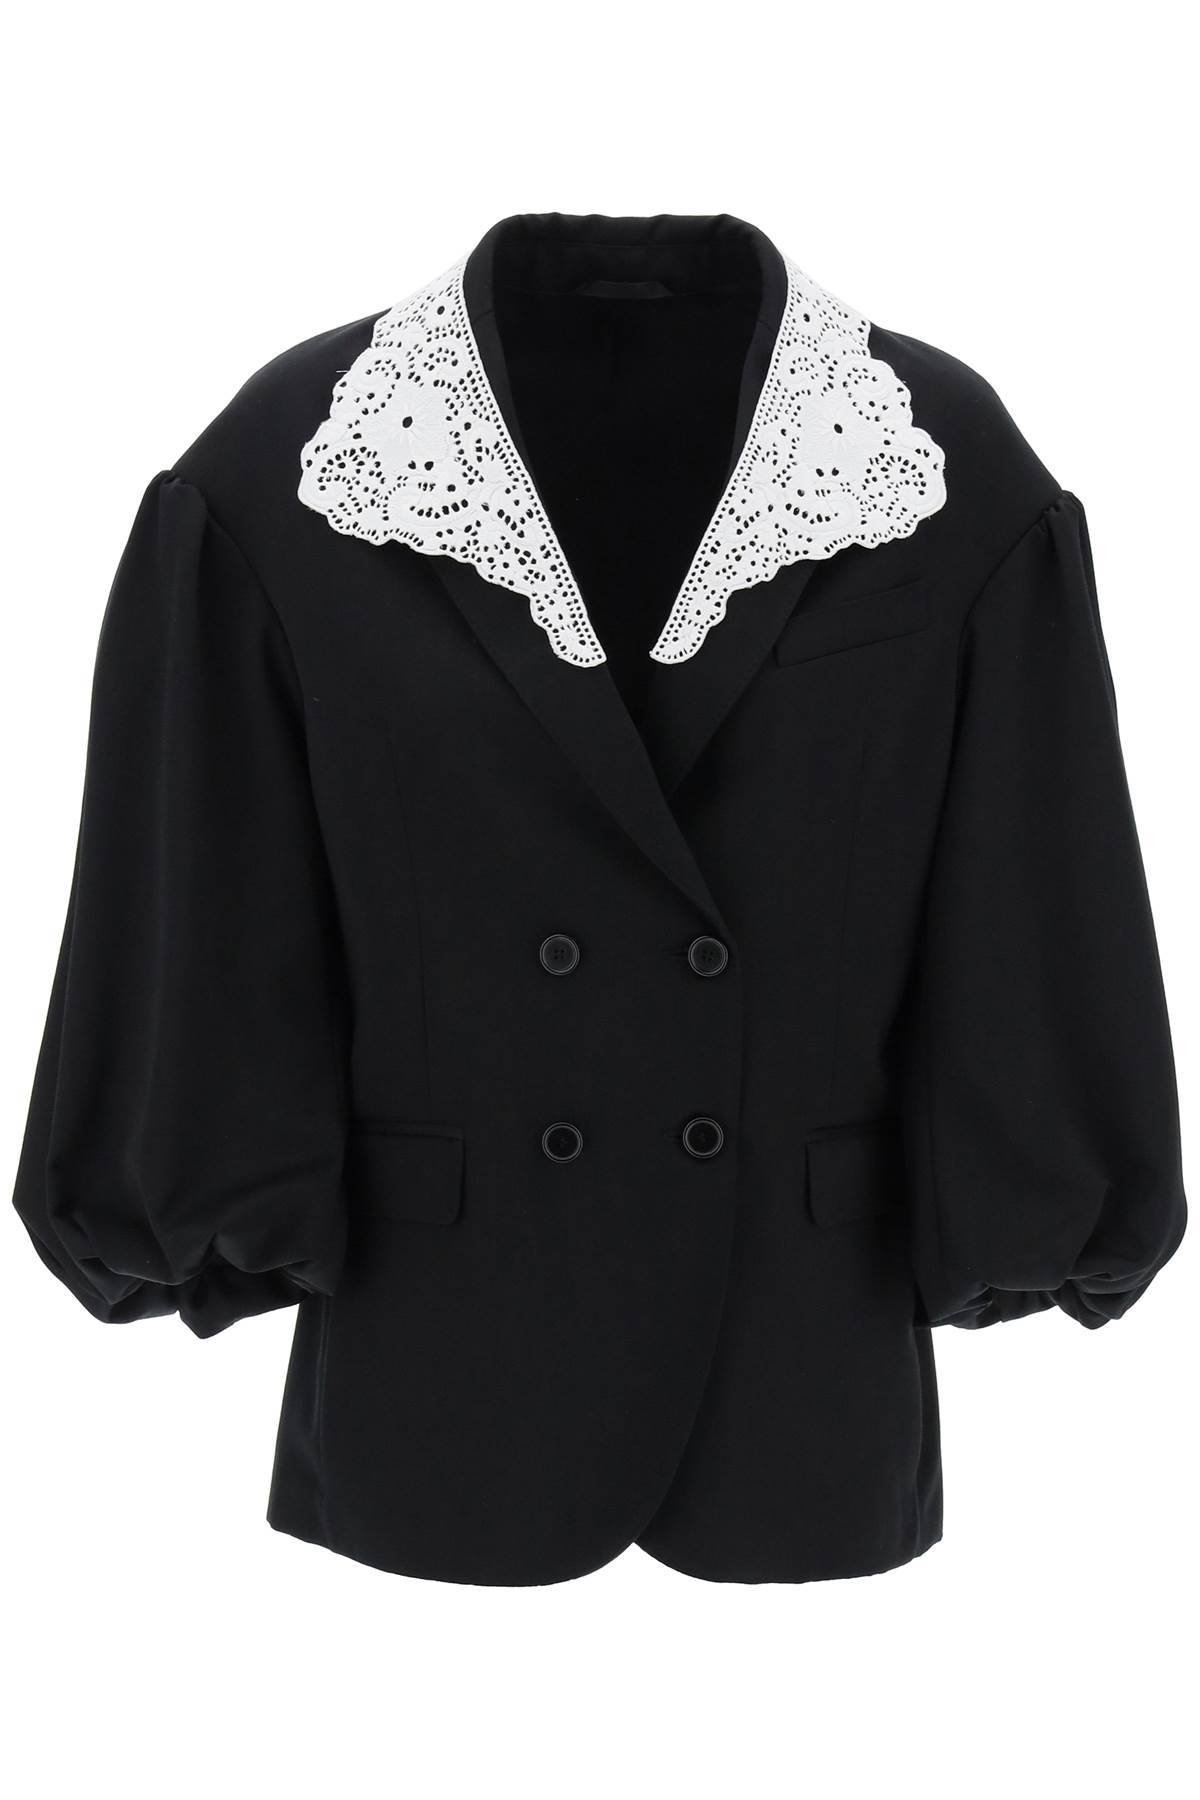 SIMONE ROCHA "oversized blazer with lace